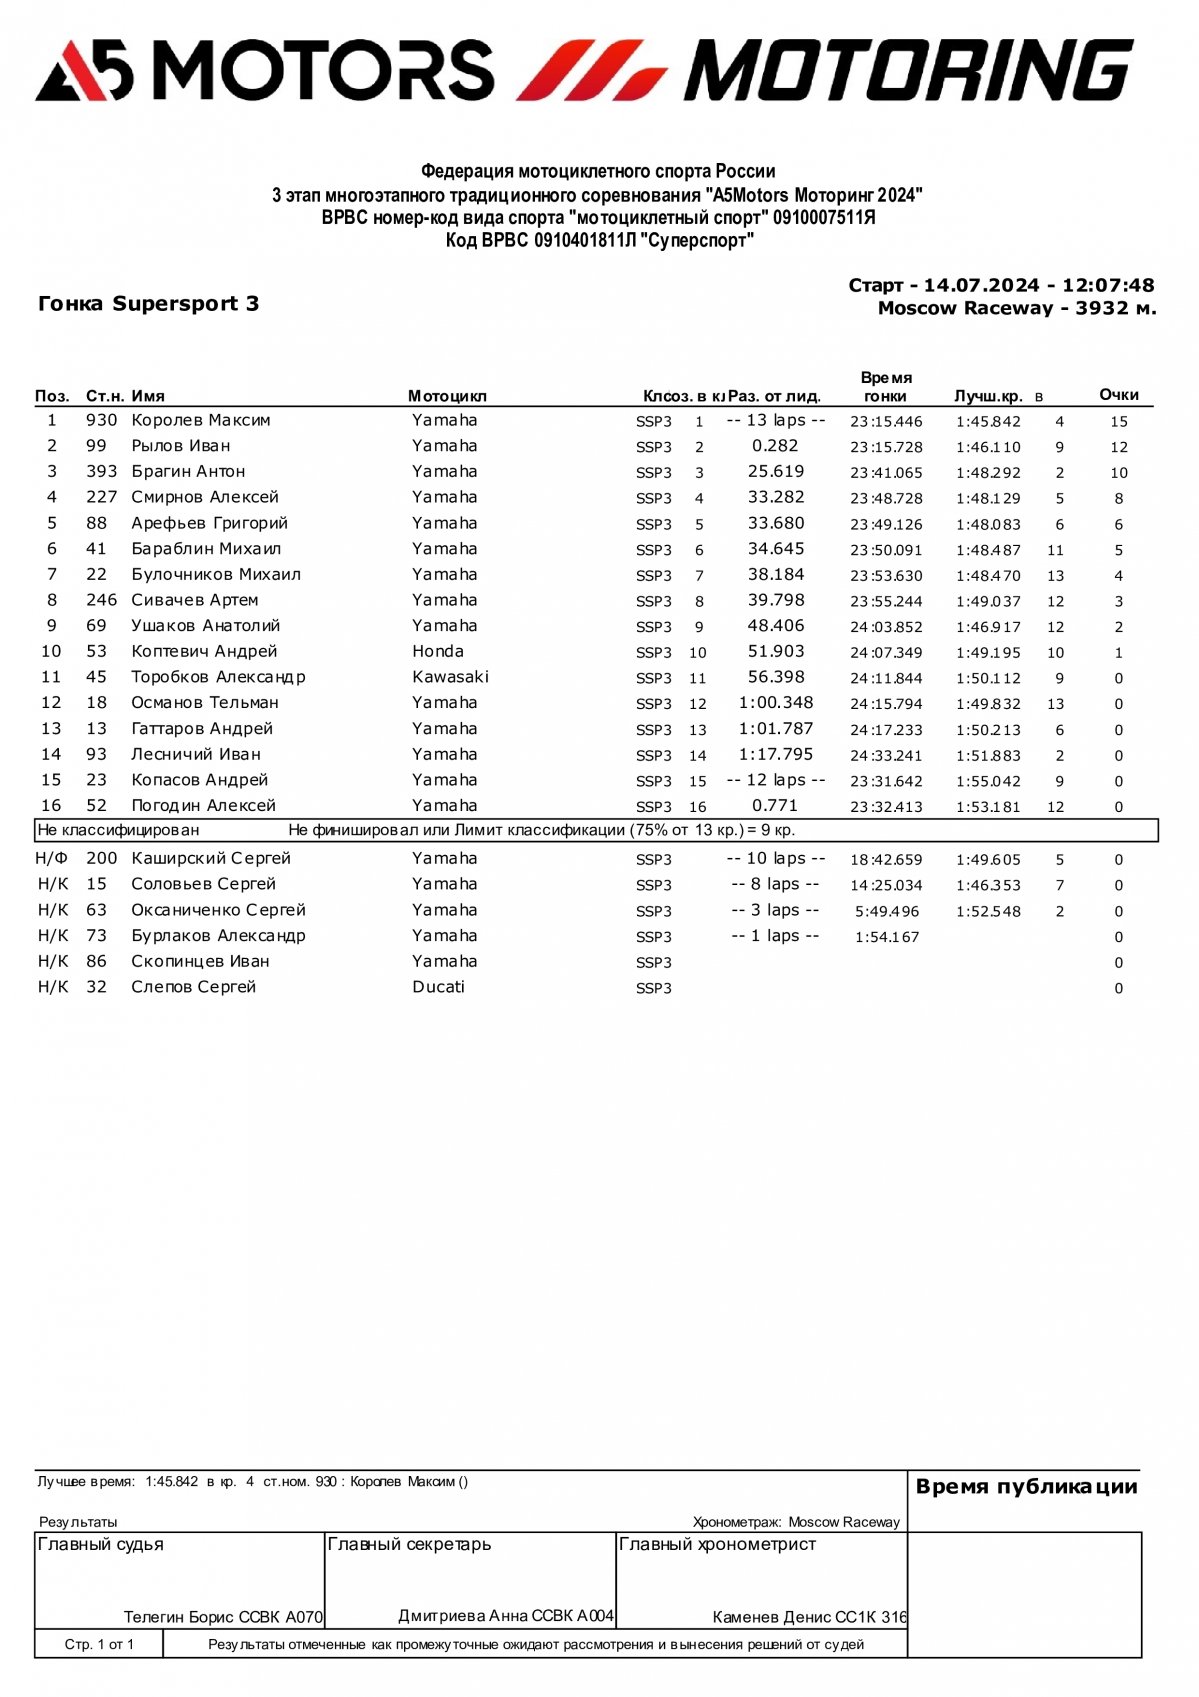 Предварительные результаты гонки 3 этапа чемпионата A5Motors Motoring в классе SSP3